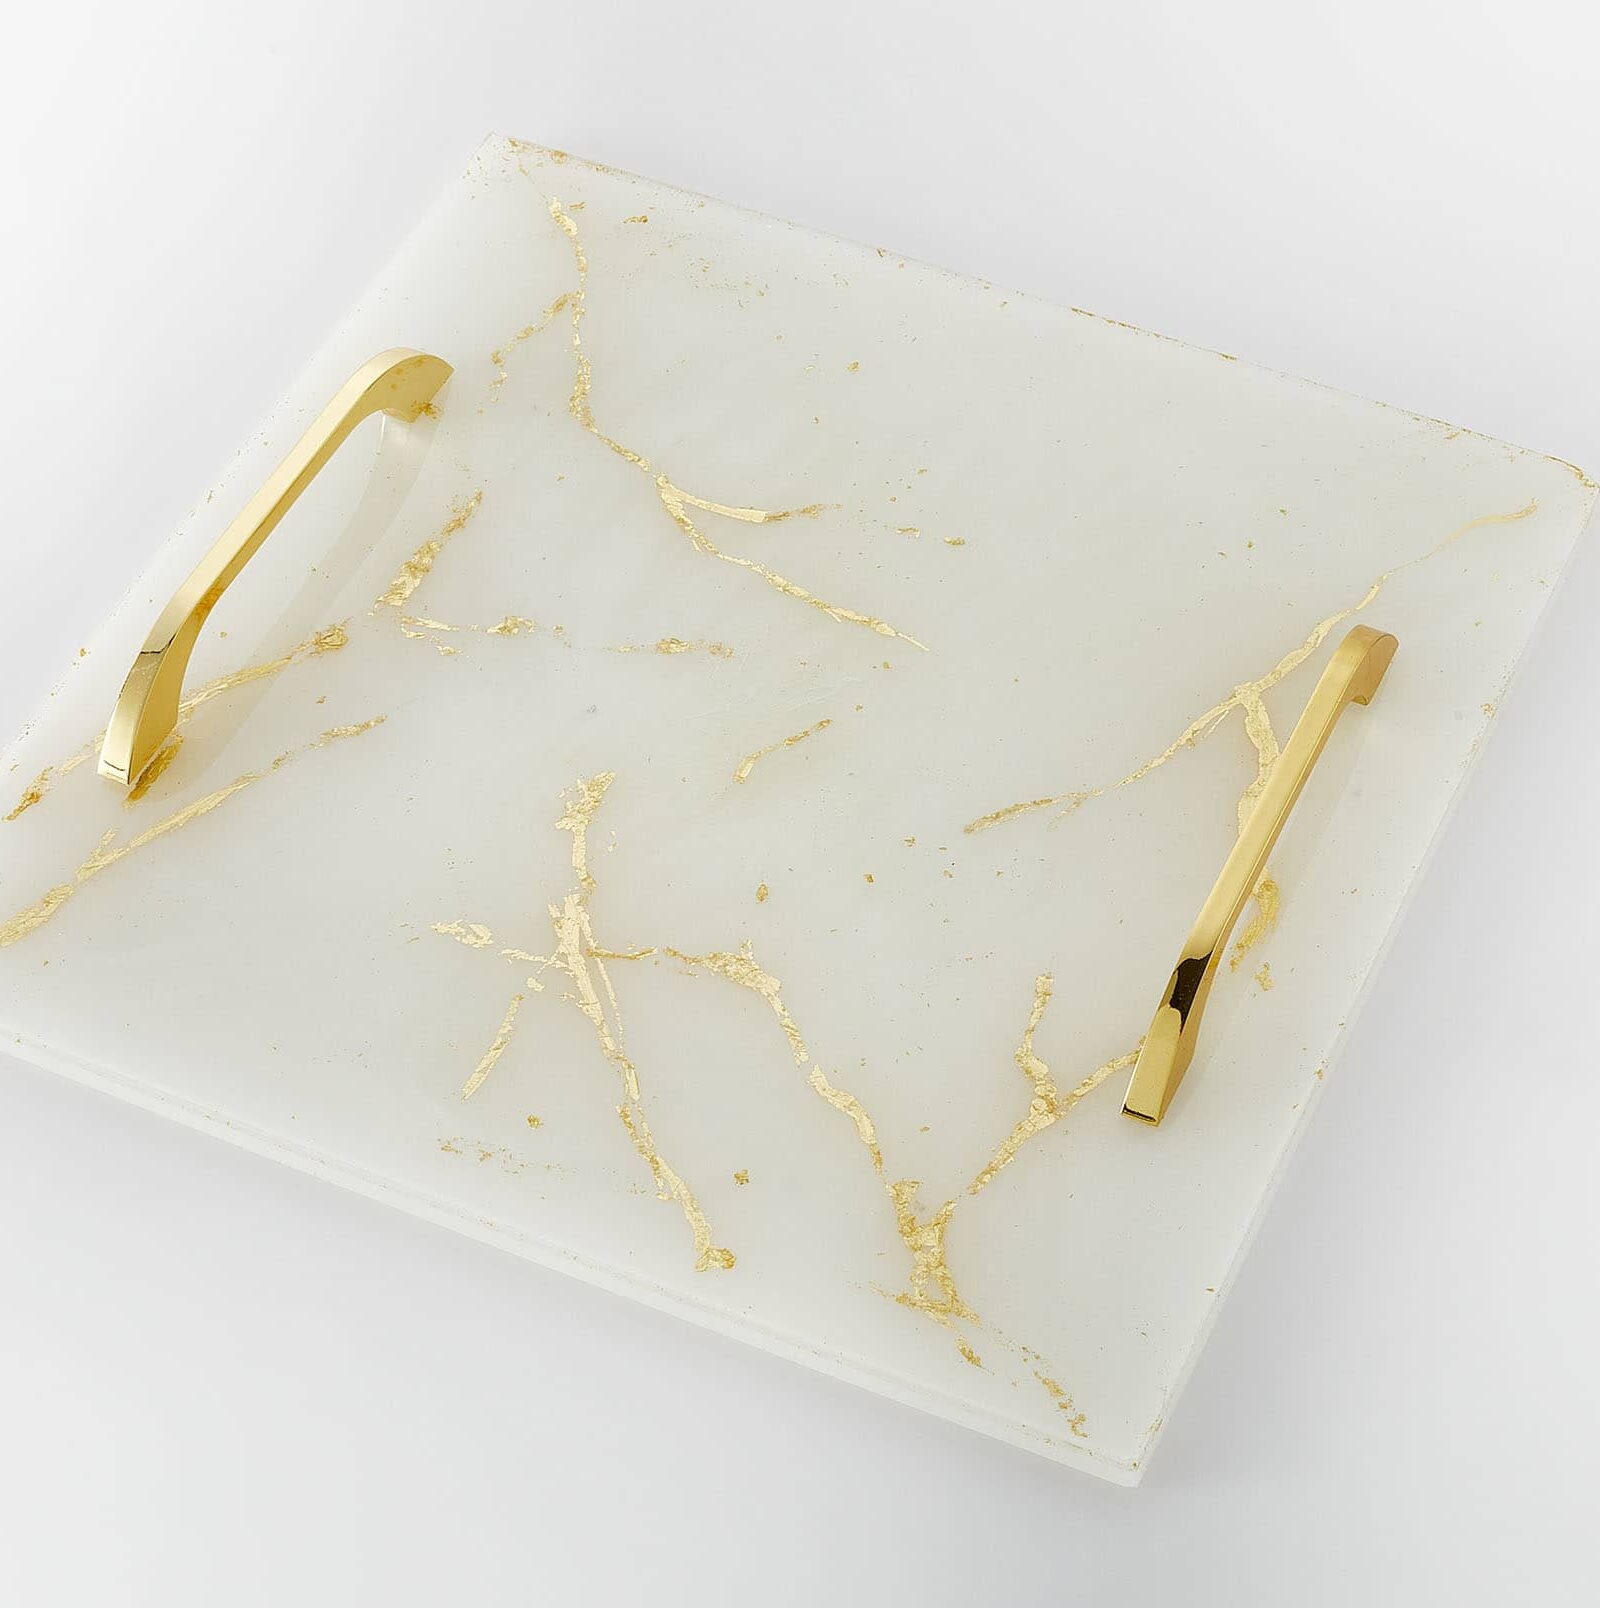 δίσκος υγρό γυαλί περλέ λευκό φύλλα χρυσού χρυσά χερούλια γάμος σετ κουμπάρου χρυσό σετ : 1